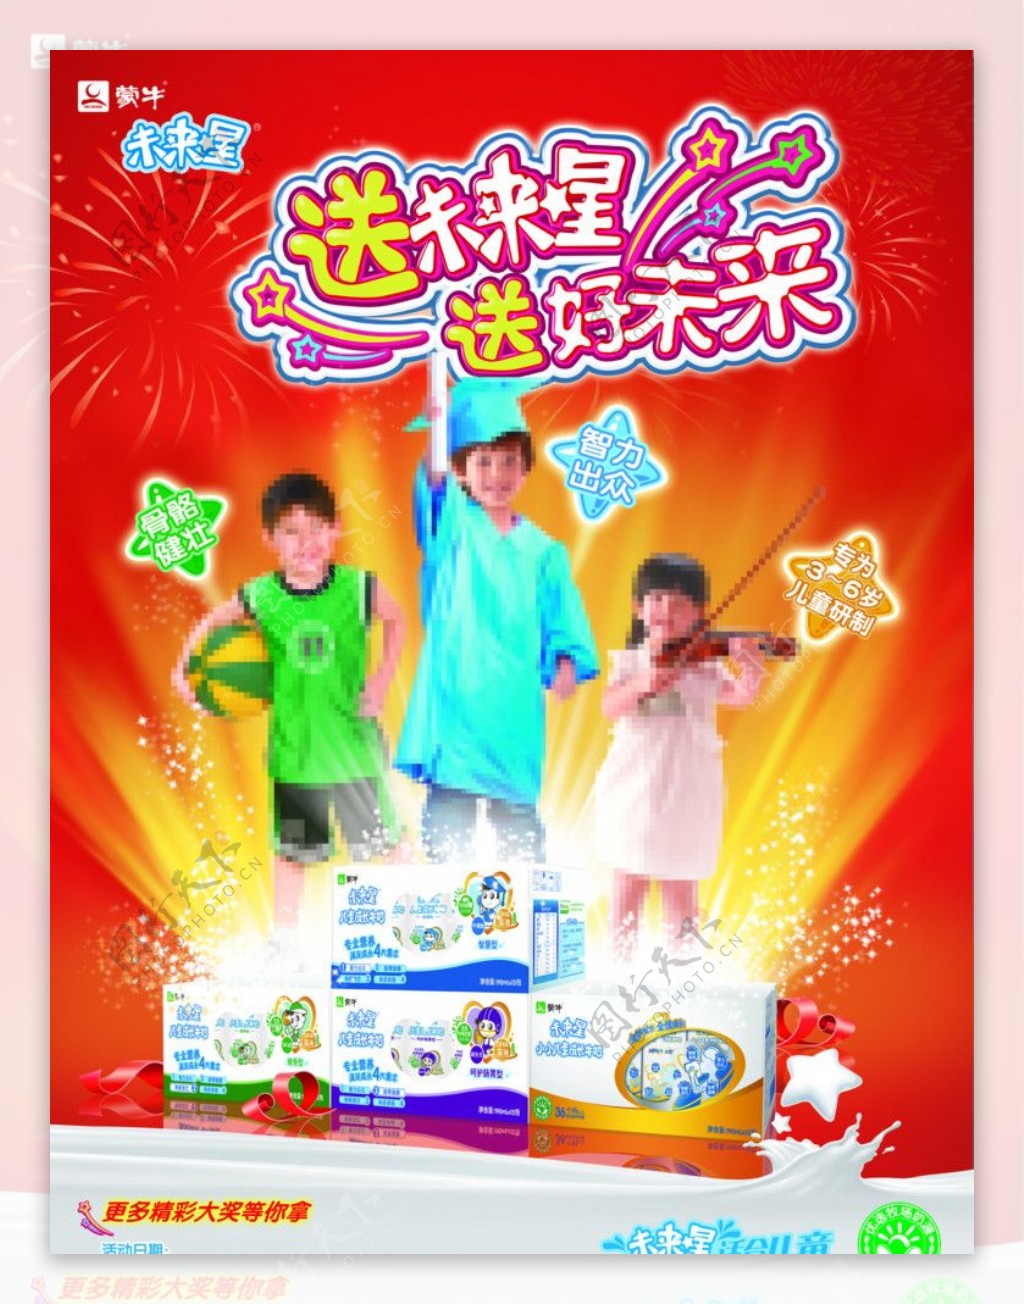 2012年蒙牛未来星春节促销活动主题海报